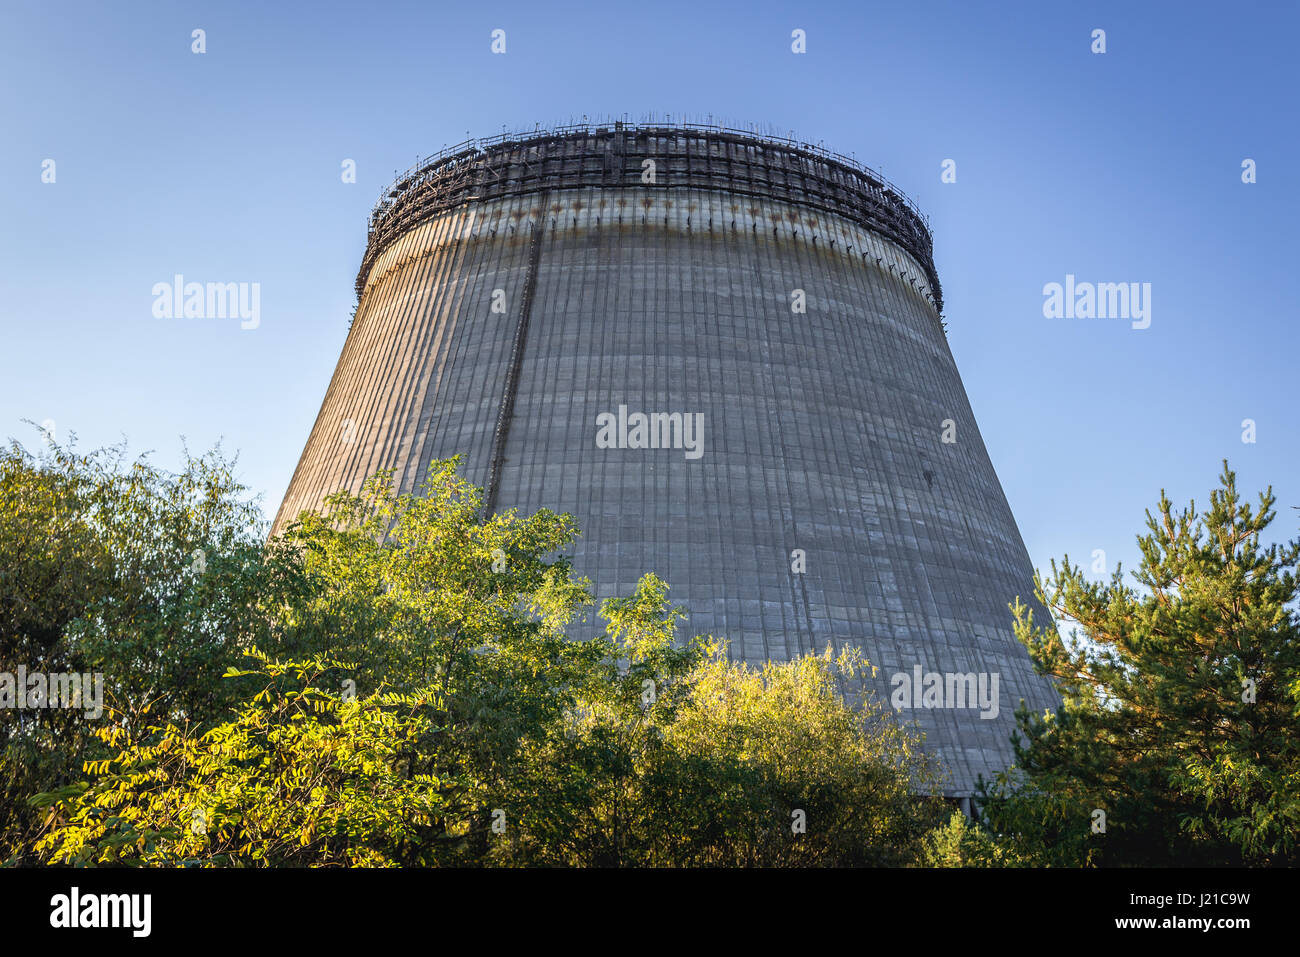 Torre de refrigeración de la central nuclear de Chernobyl en la zona de alienación en torno a la catástrofe del reactor nuclear en Ucrania Foto de stock